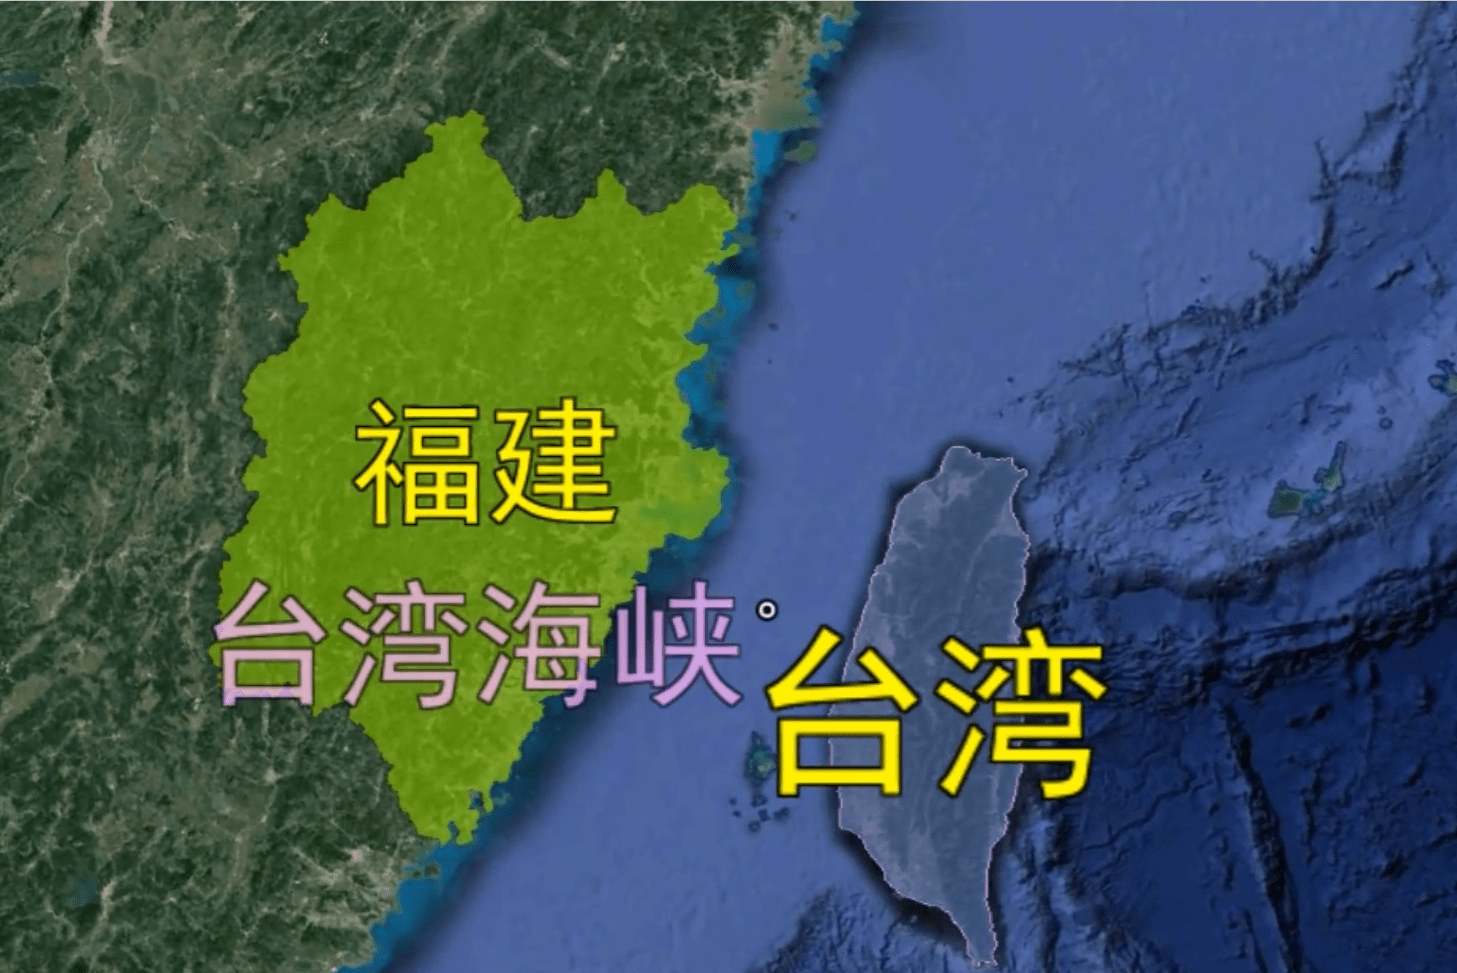 台湾海峡深度只有 60米 如果把海峡填平 会发生什么 台湾省 填海 我国